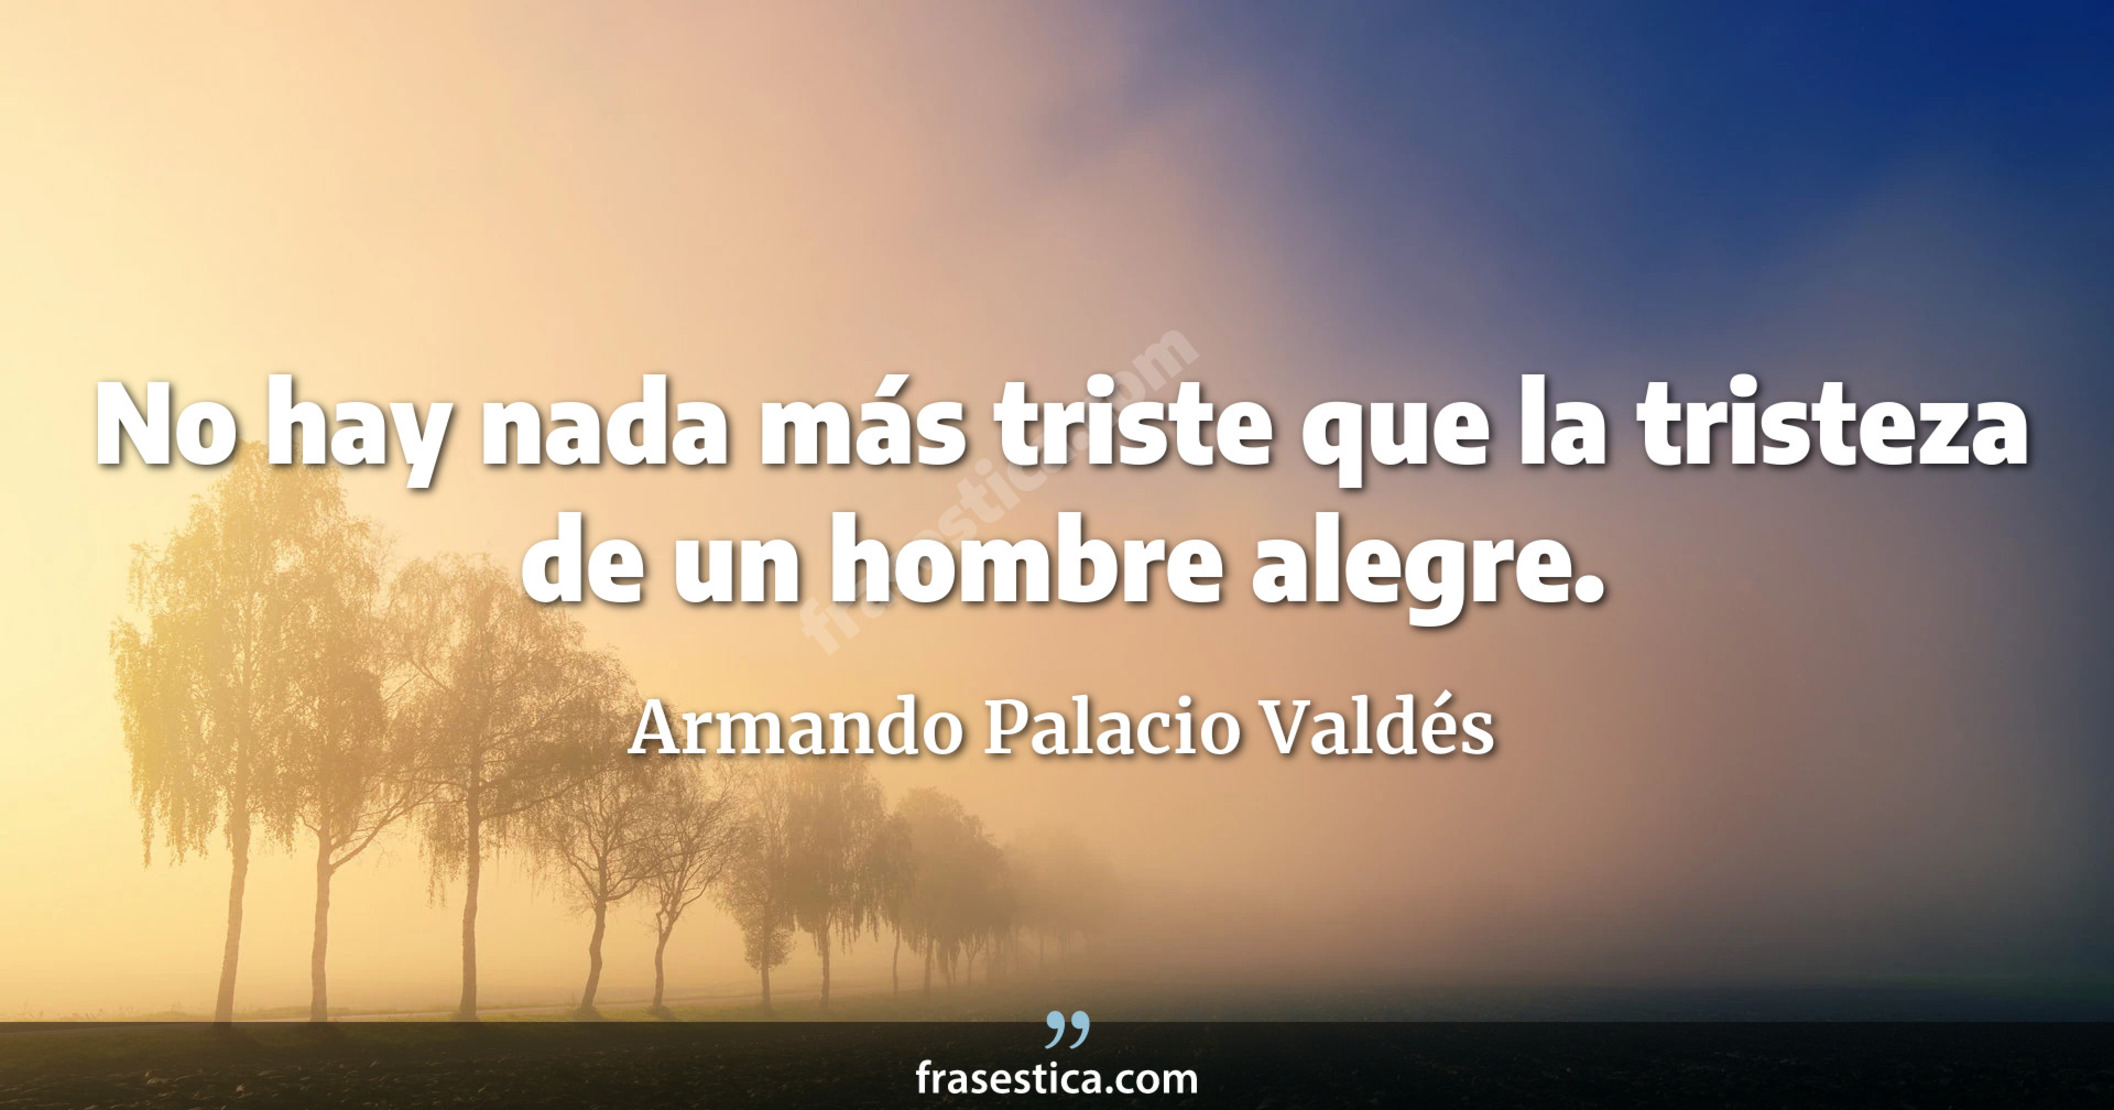 No hay nada más triste que la tristeza de un hombre alegre. - Armando Palacio Valdés